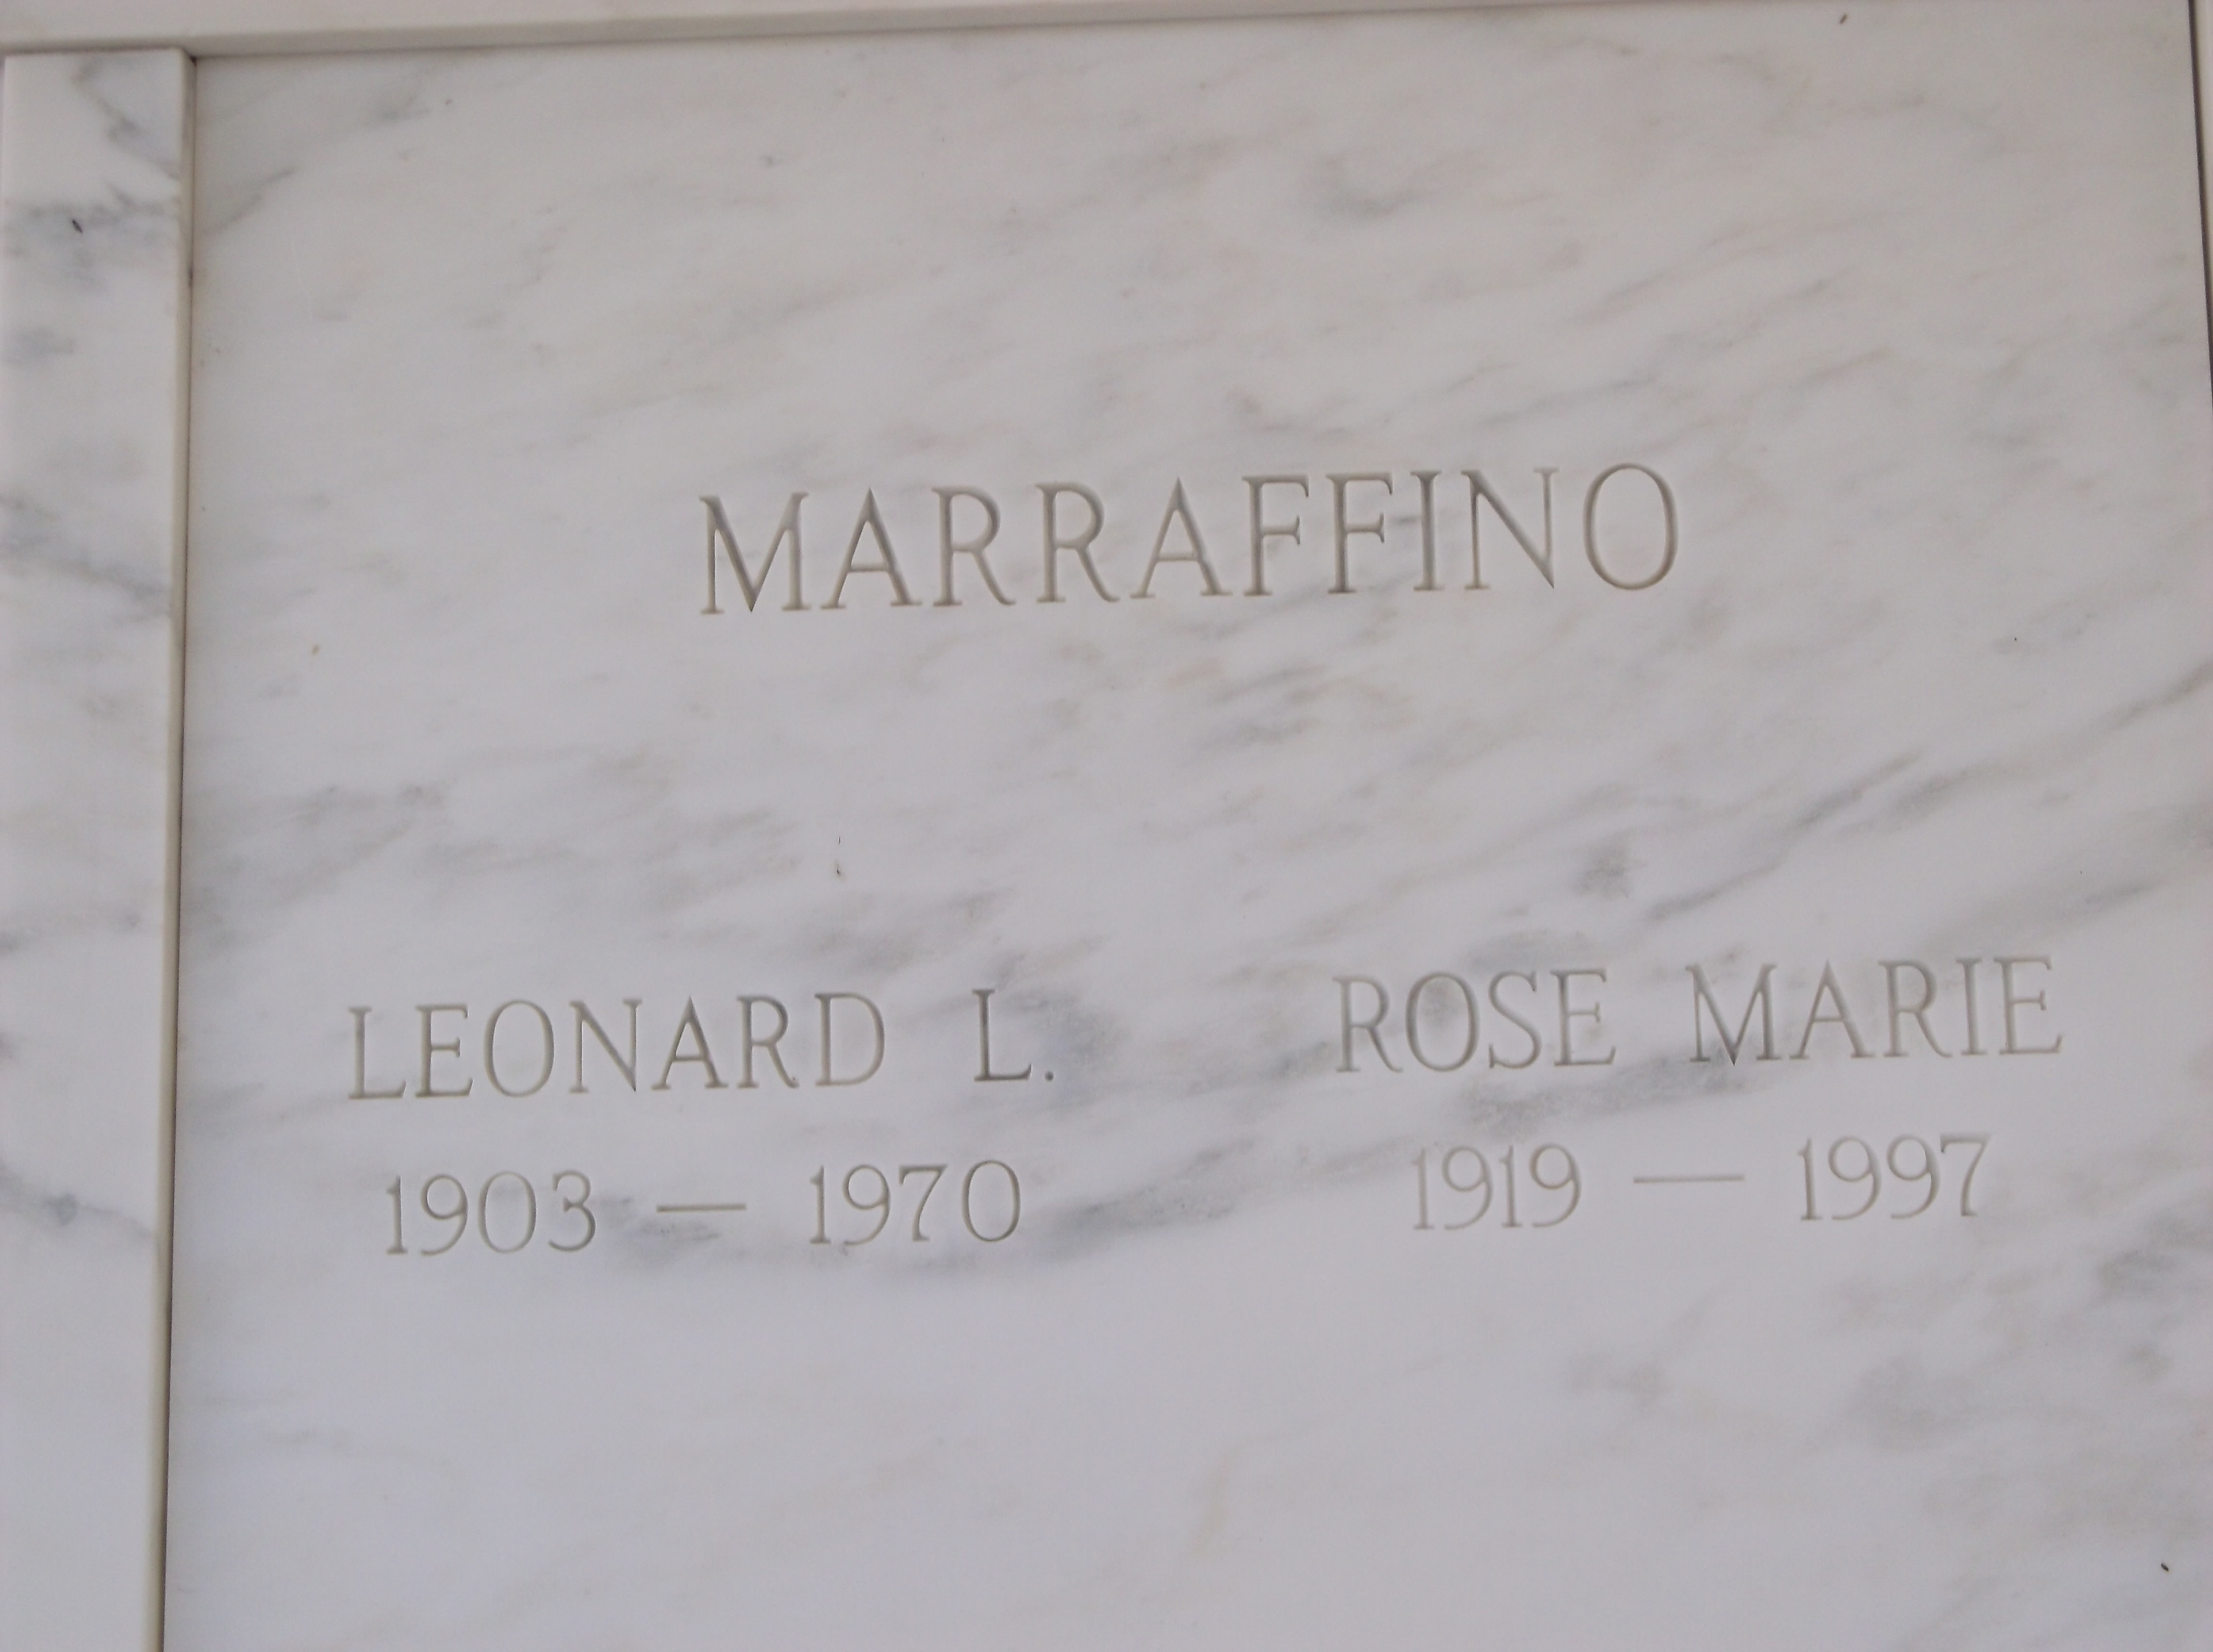 Rose Marie Marraffino